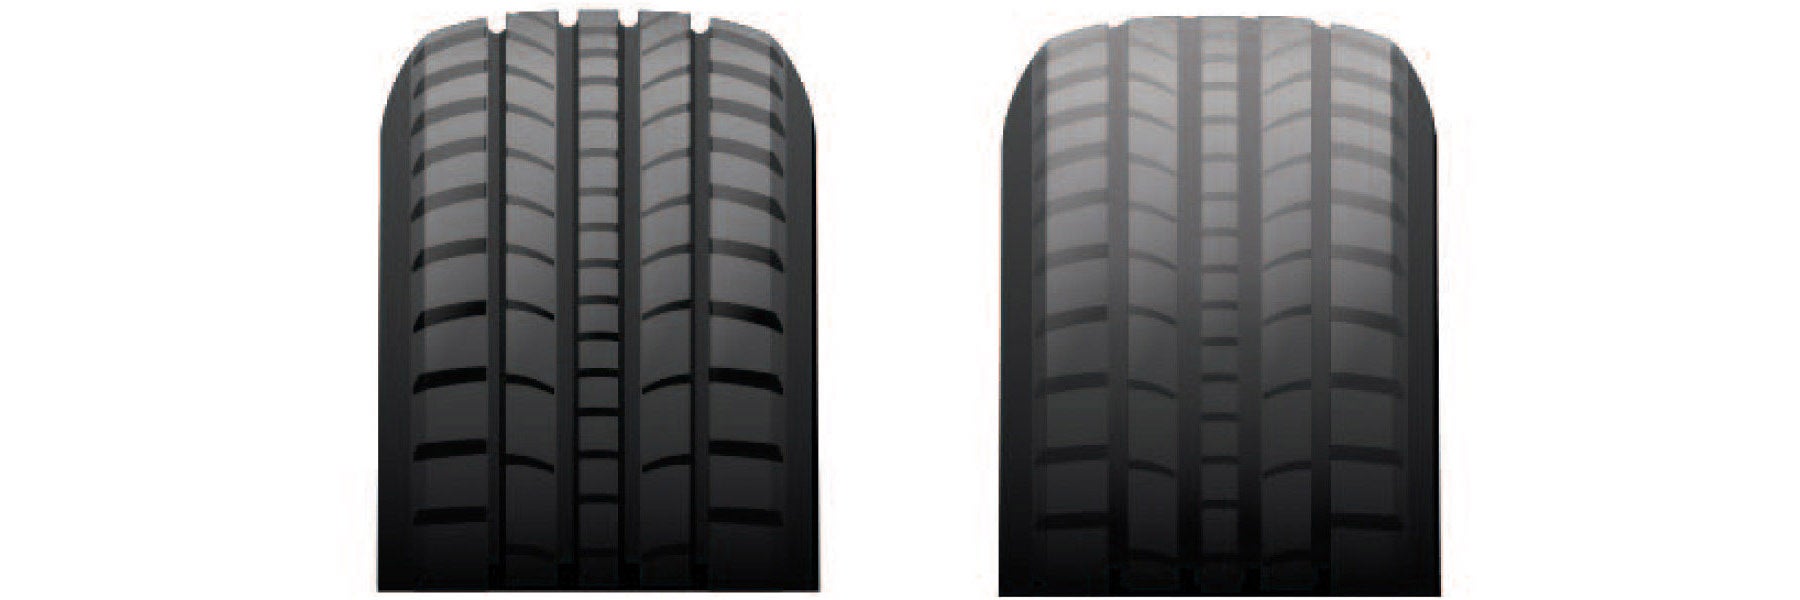 Tire tread depth comparison at Hayward Kia in Hayward CA